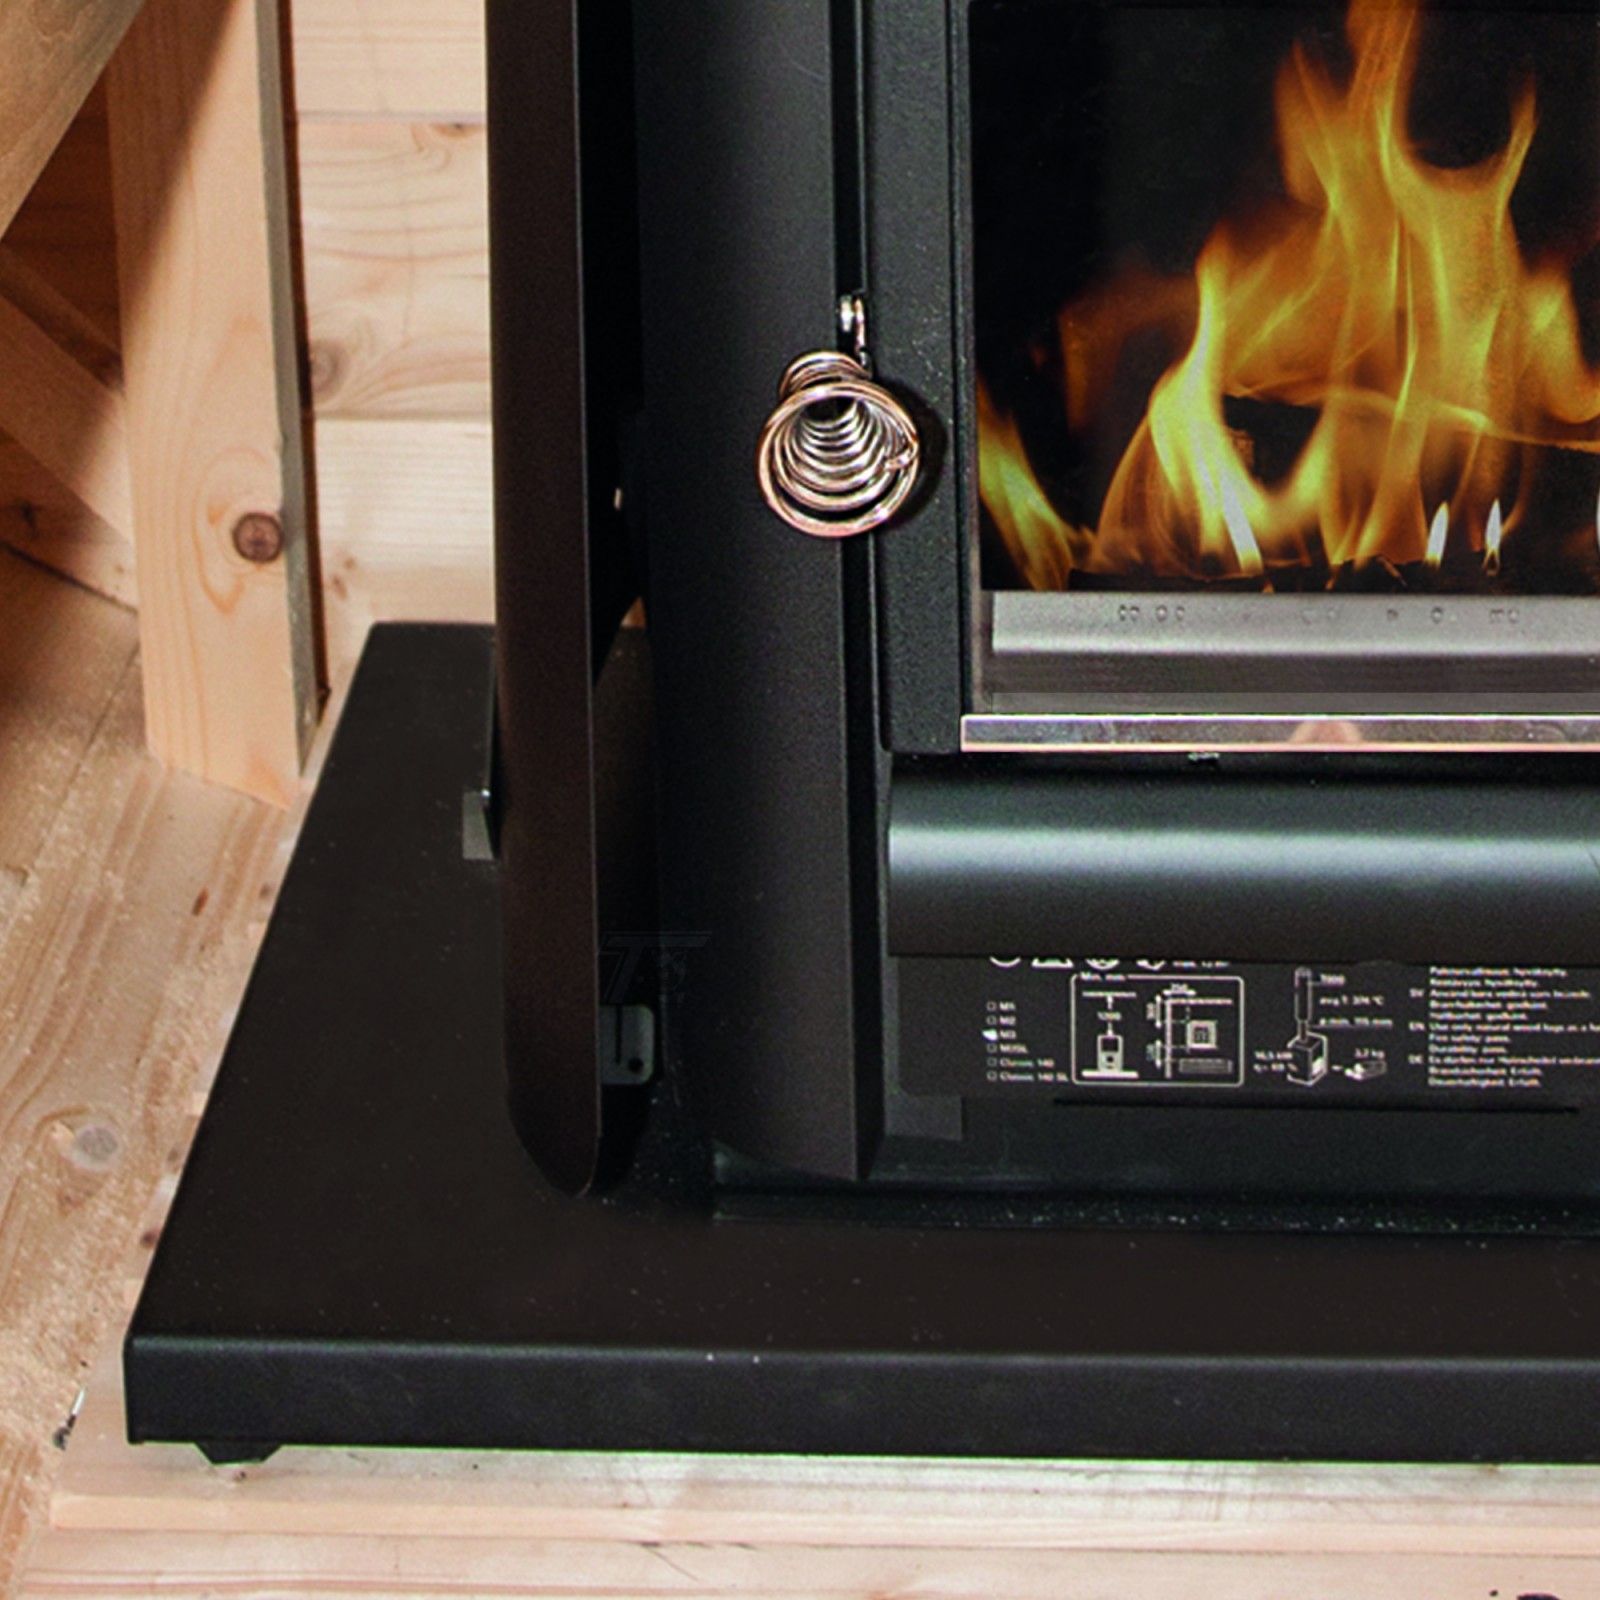 por no mencionar humedad Embotellamiento Suelo de metal para calentador de leña para sauna modelo HARVIA M3. Mira!